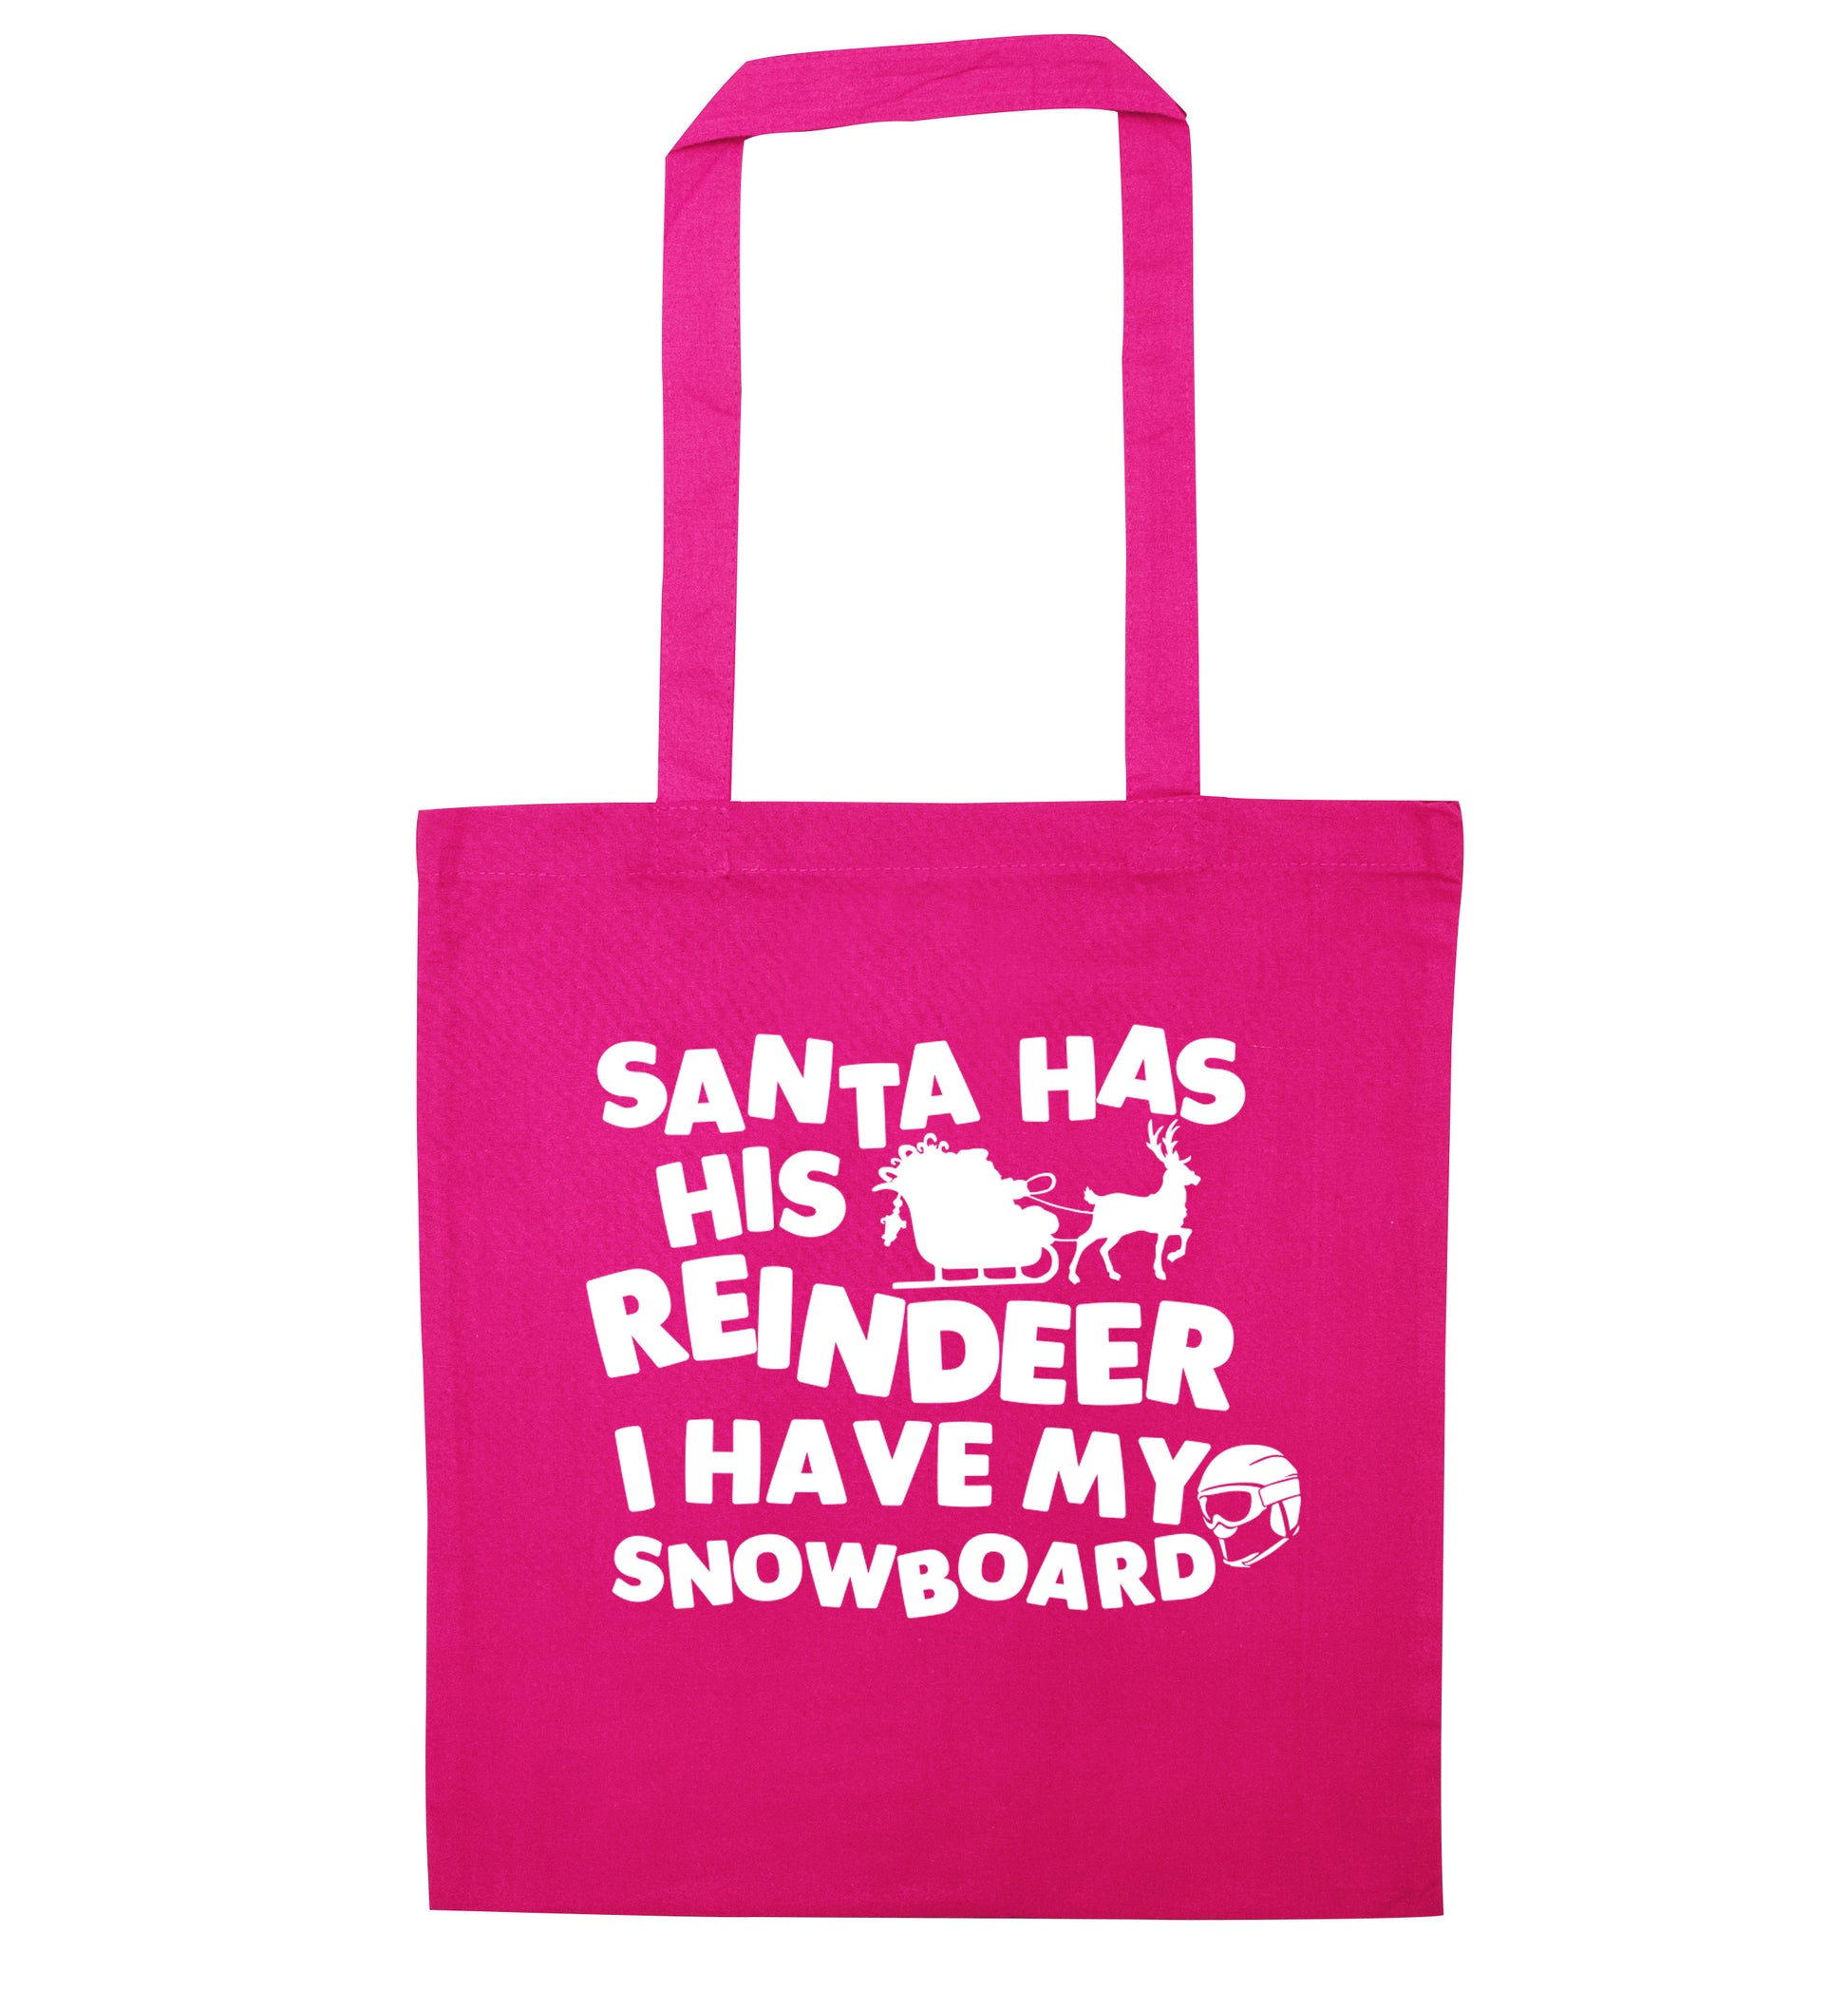 Santa has his reindeer I have my snowboard pink tote bag